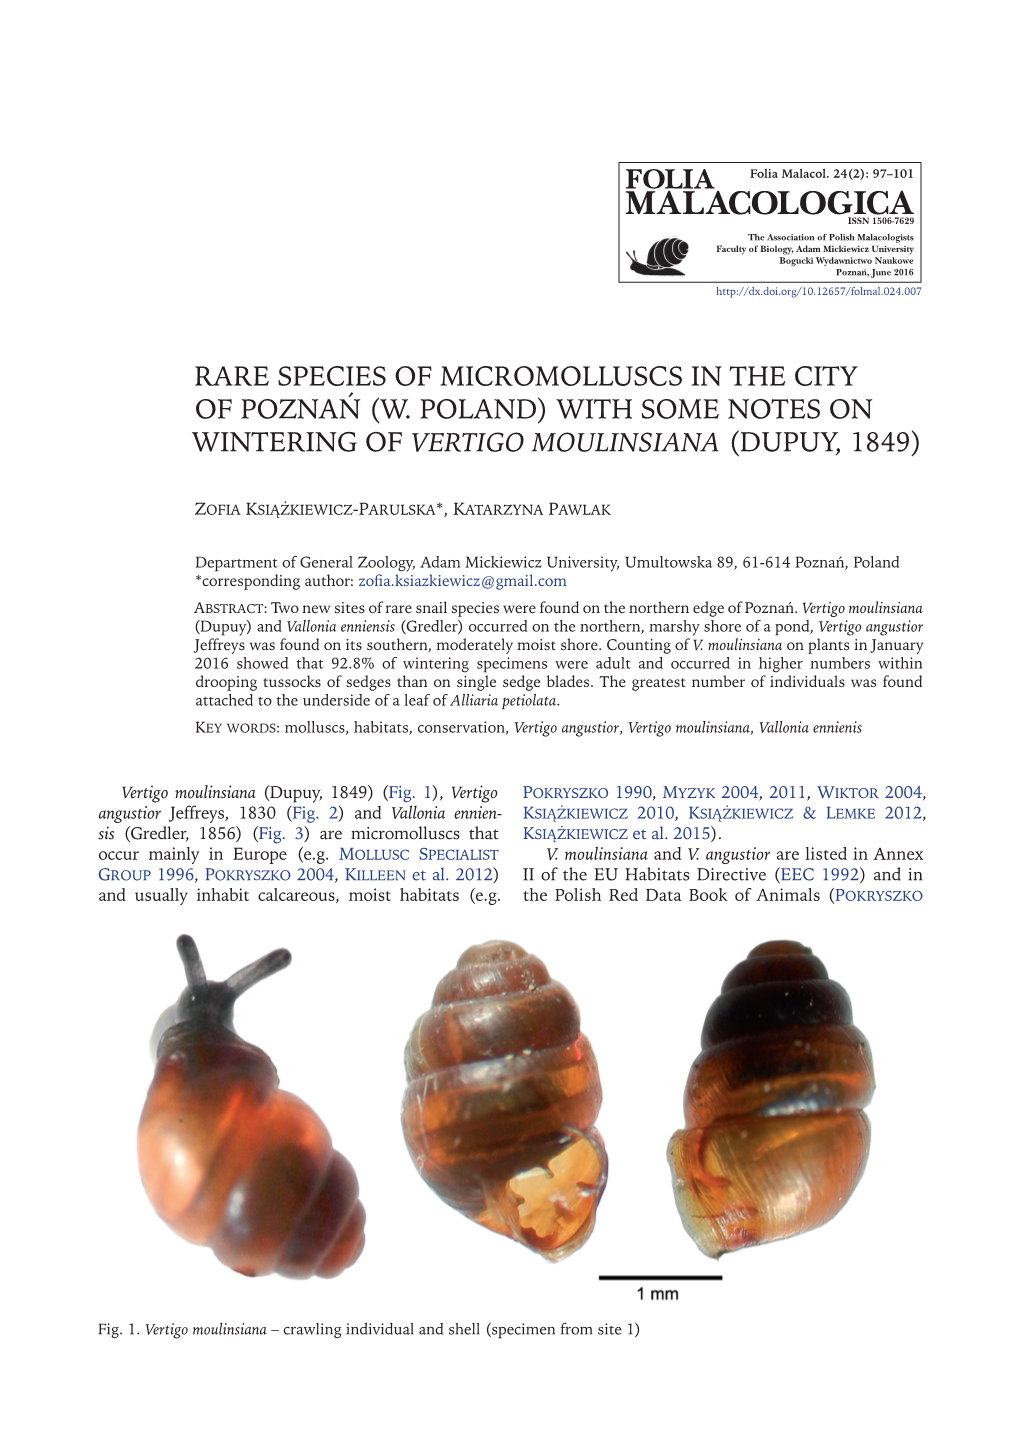 W. Poland) with Some Notes on Wintering of Vertigo Moulinsiana (Dupuy, 1849)